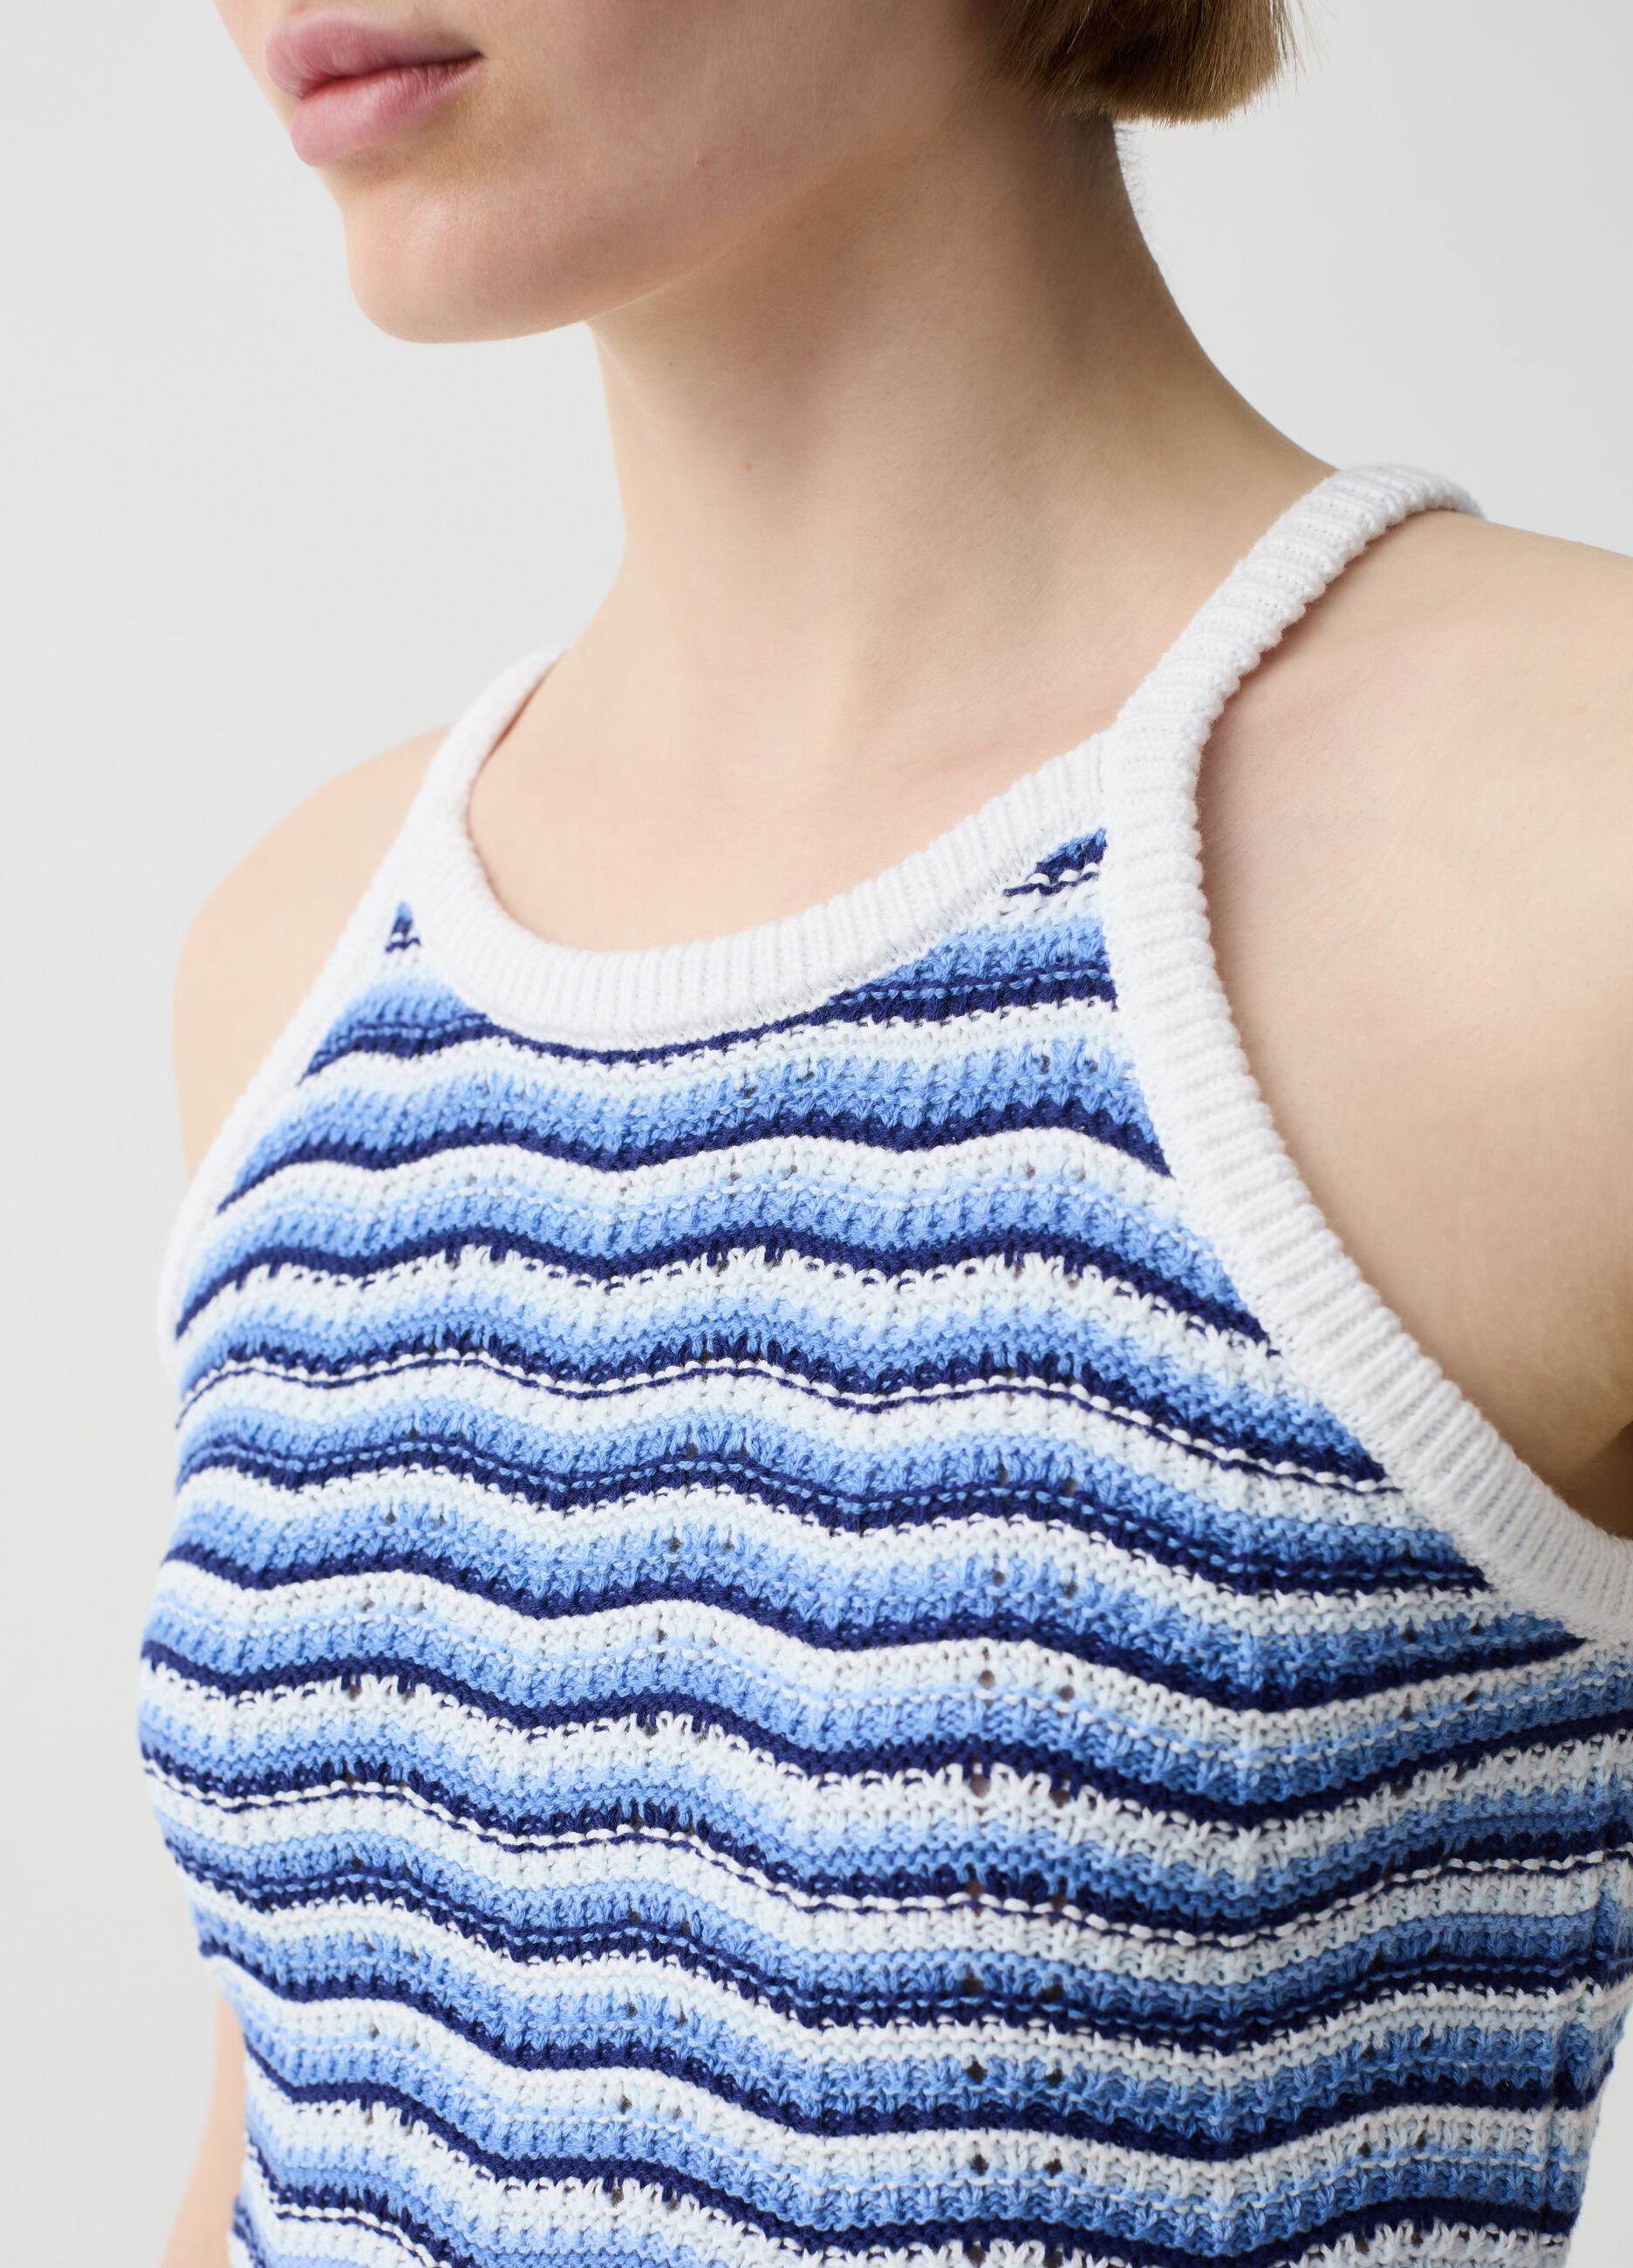 Crochet crop top with halter neck